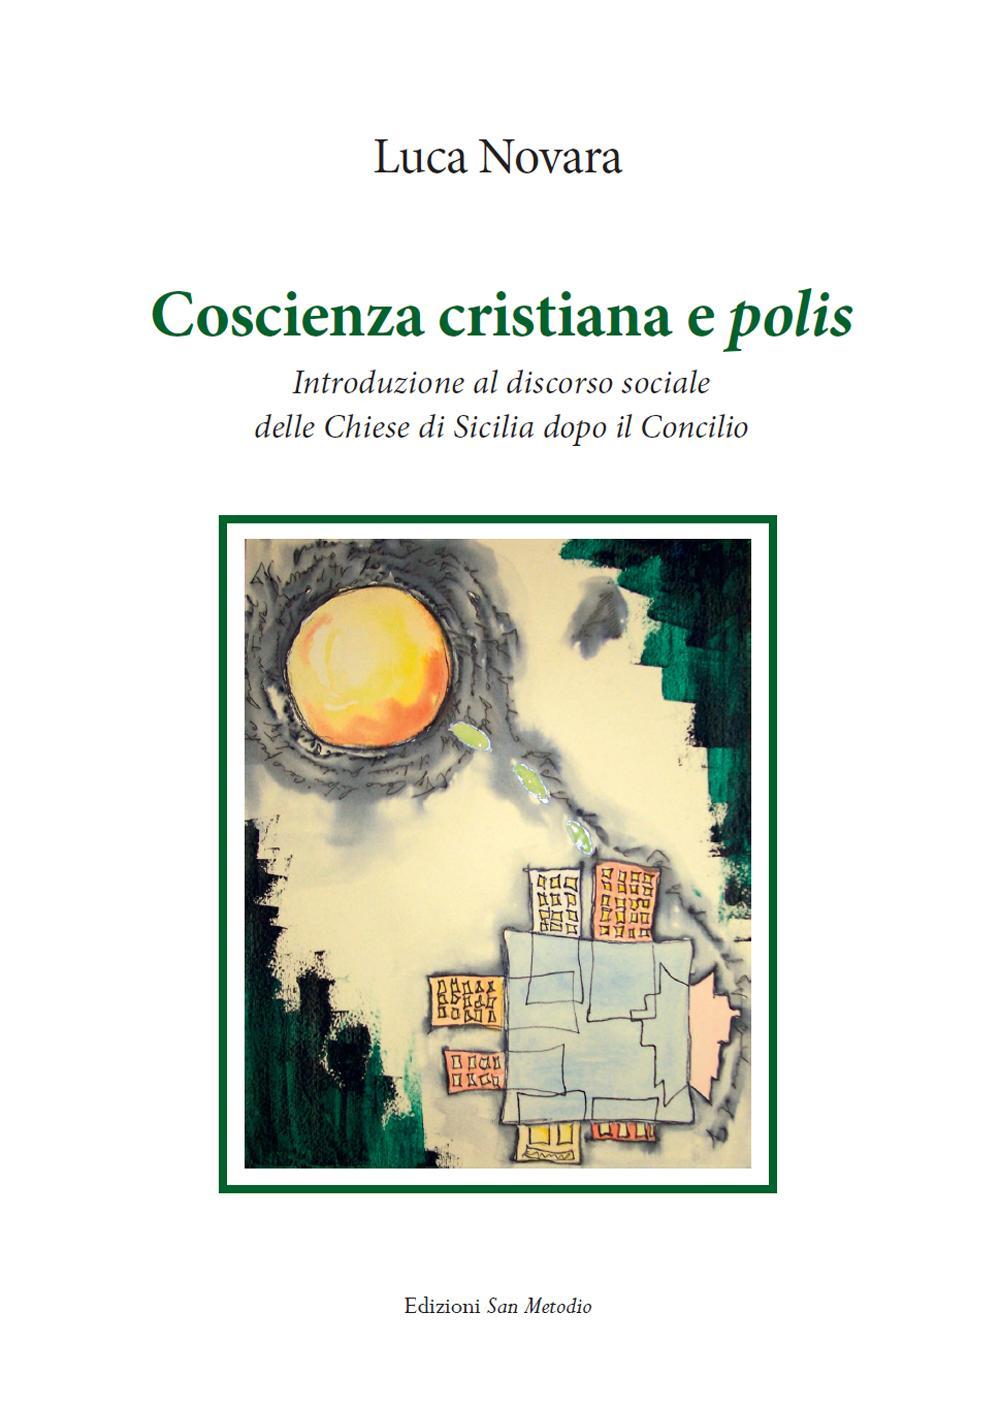 Coscienza cristiana e polis. Introduzione al discorso sociale delle Chiese di Sicilia dopo il Concilio